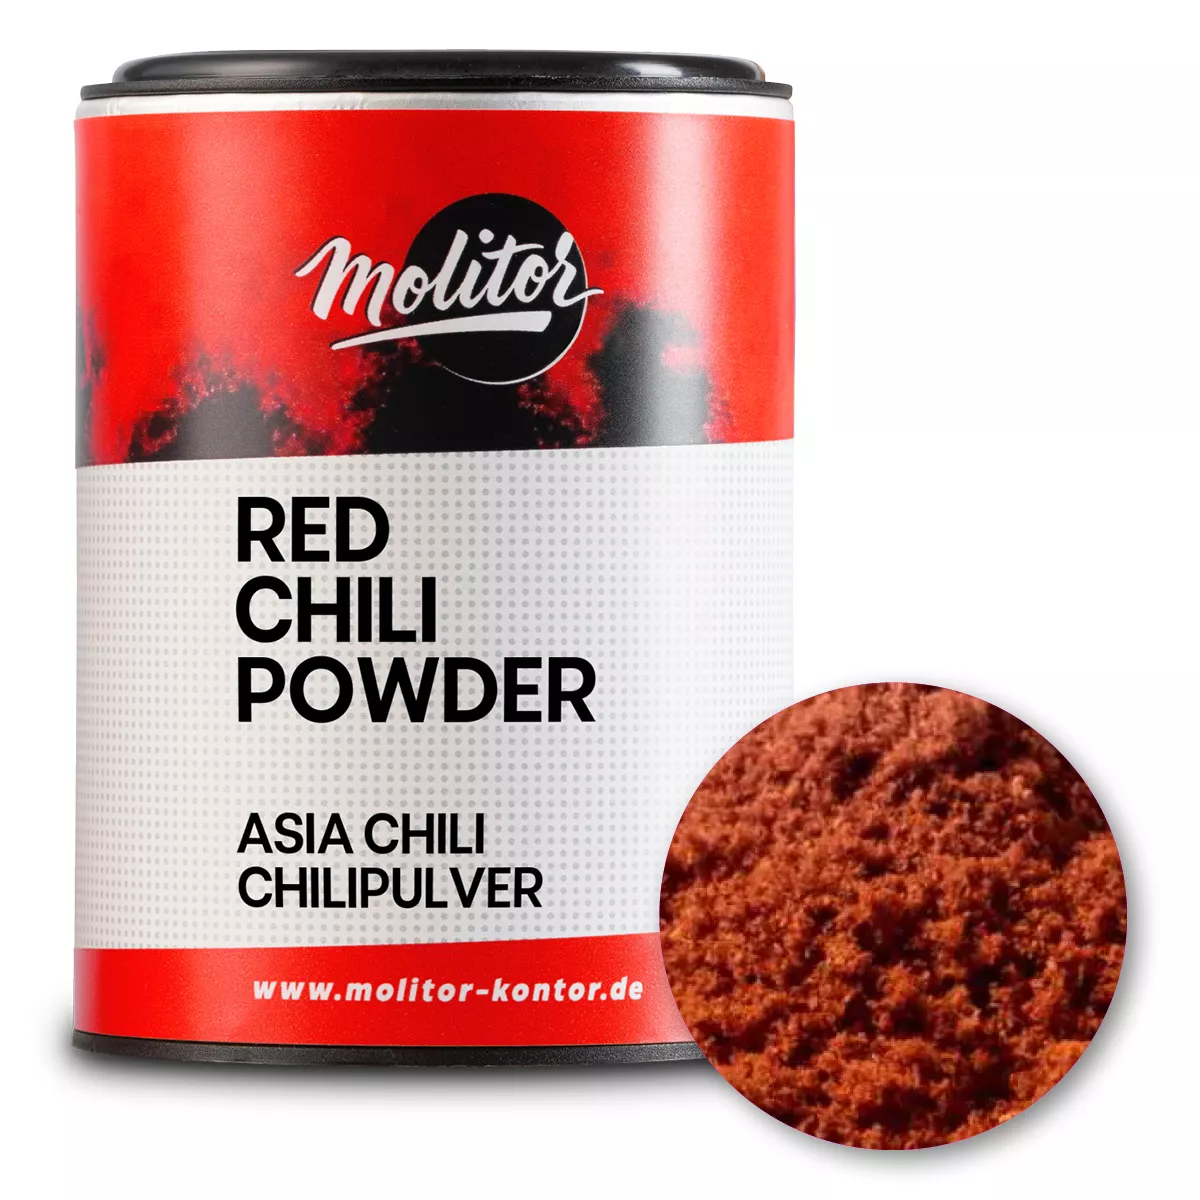 Red Chili Powder | Asia Chili Pulver